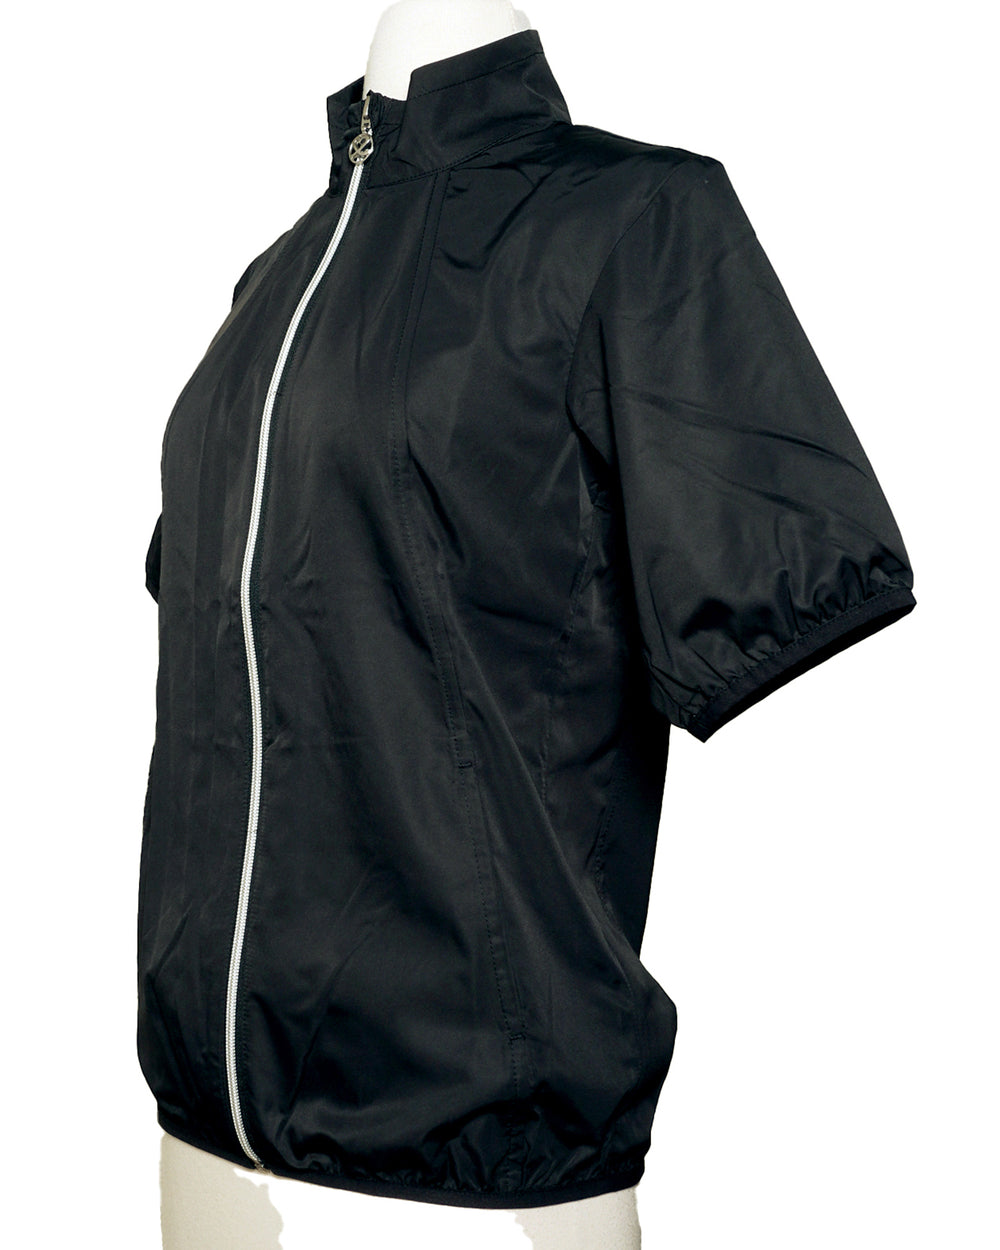 Daily Sports Mia Short Sleeve Wind Jacket - Size X-Small - Skorzie